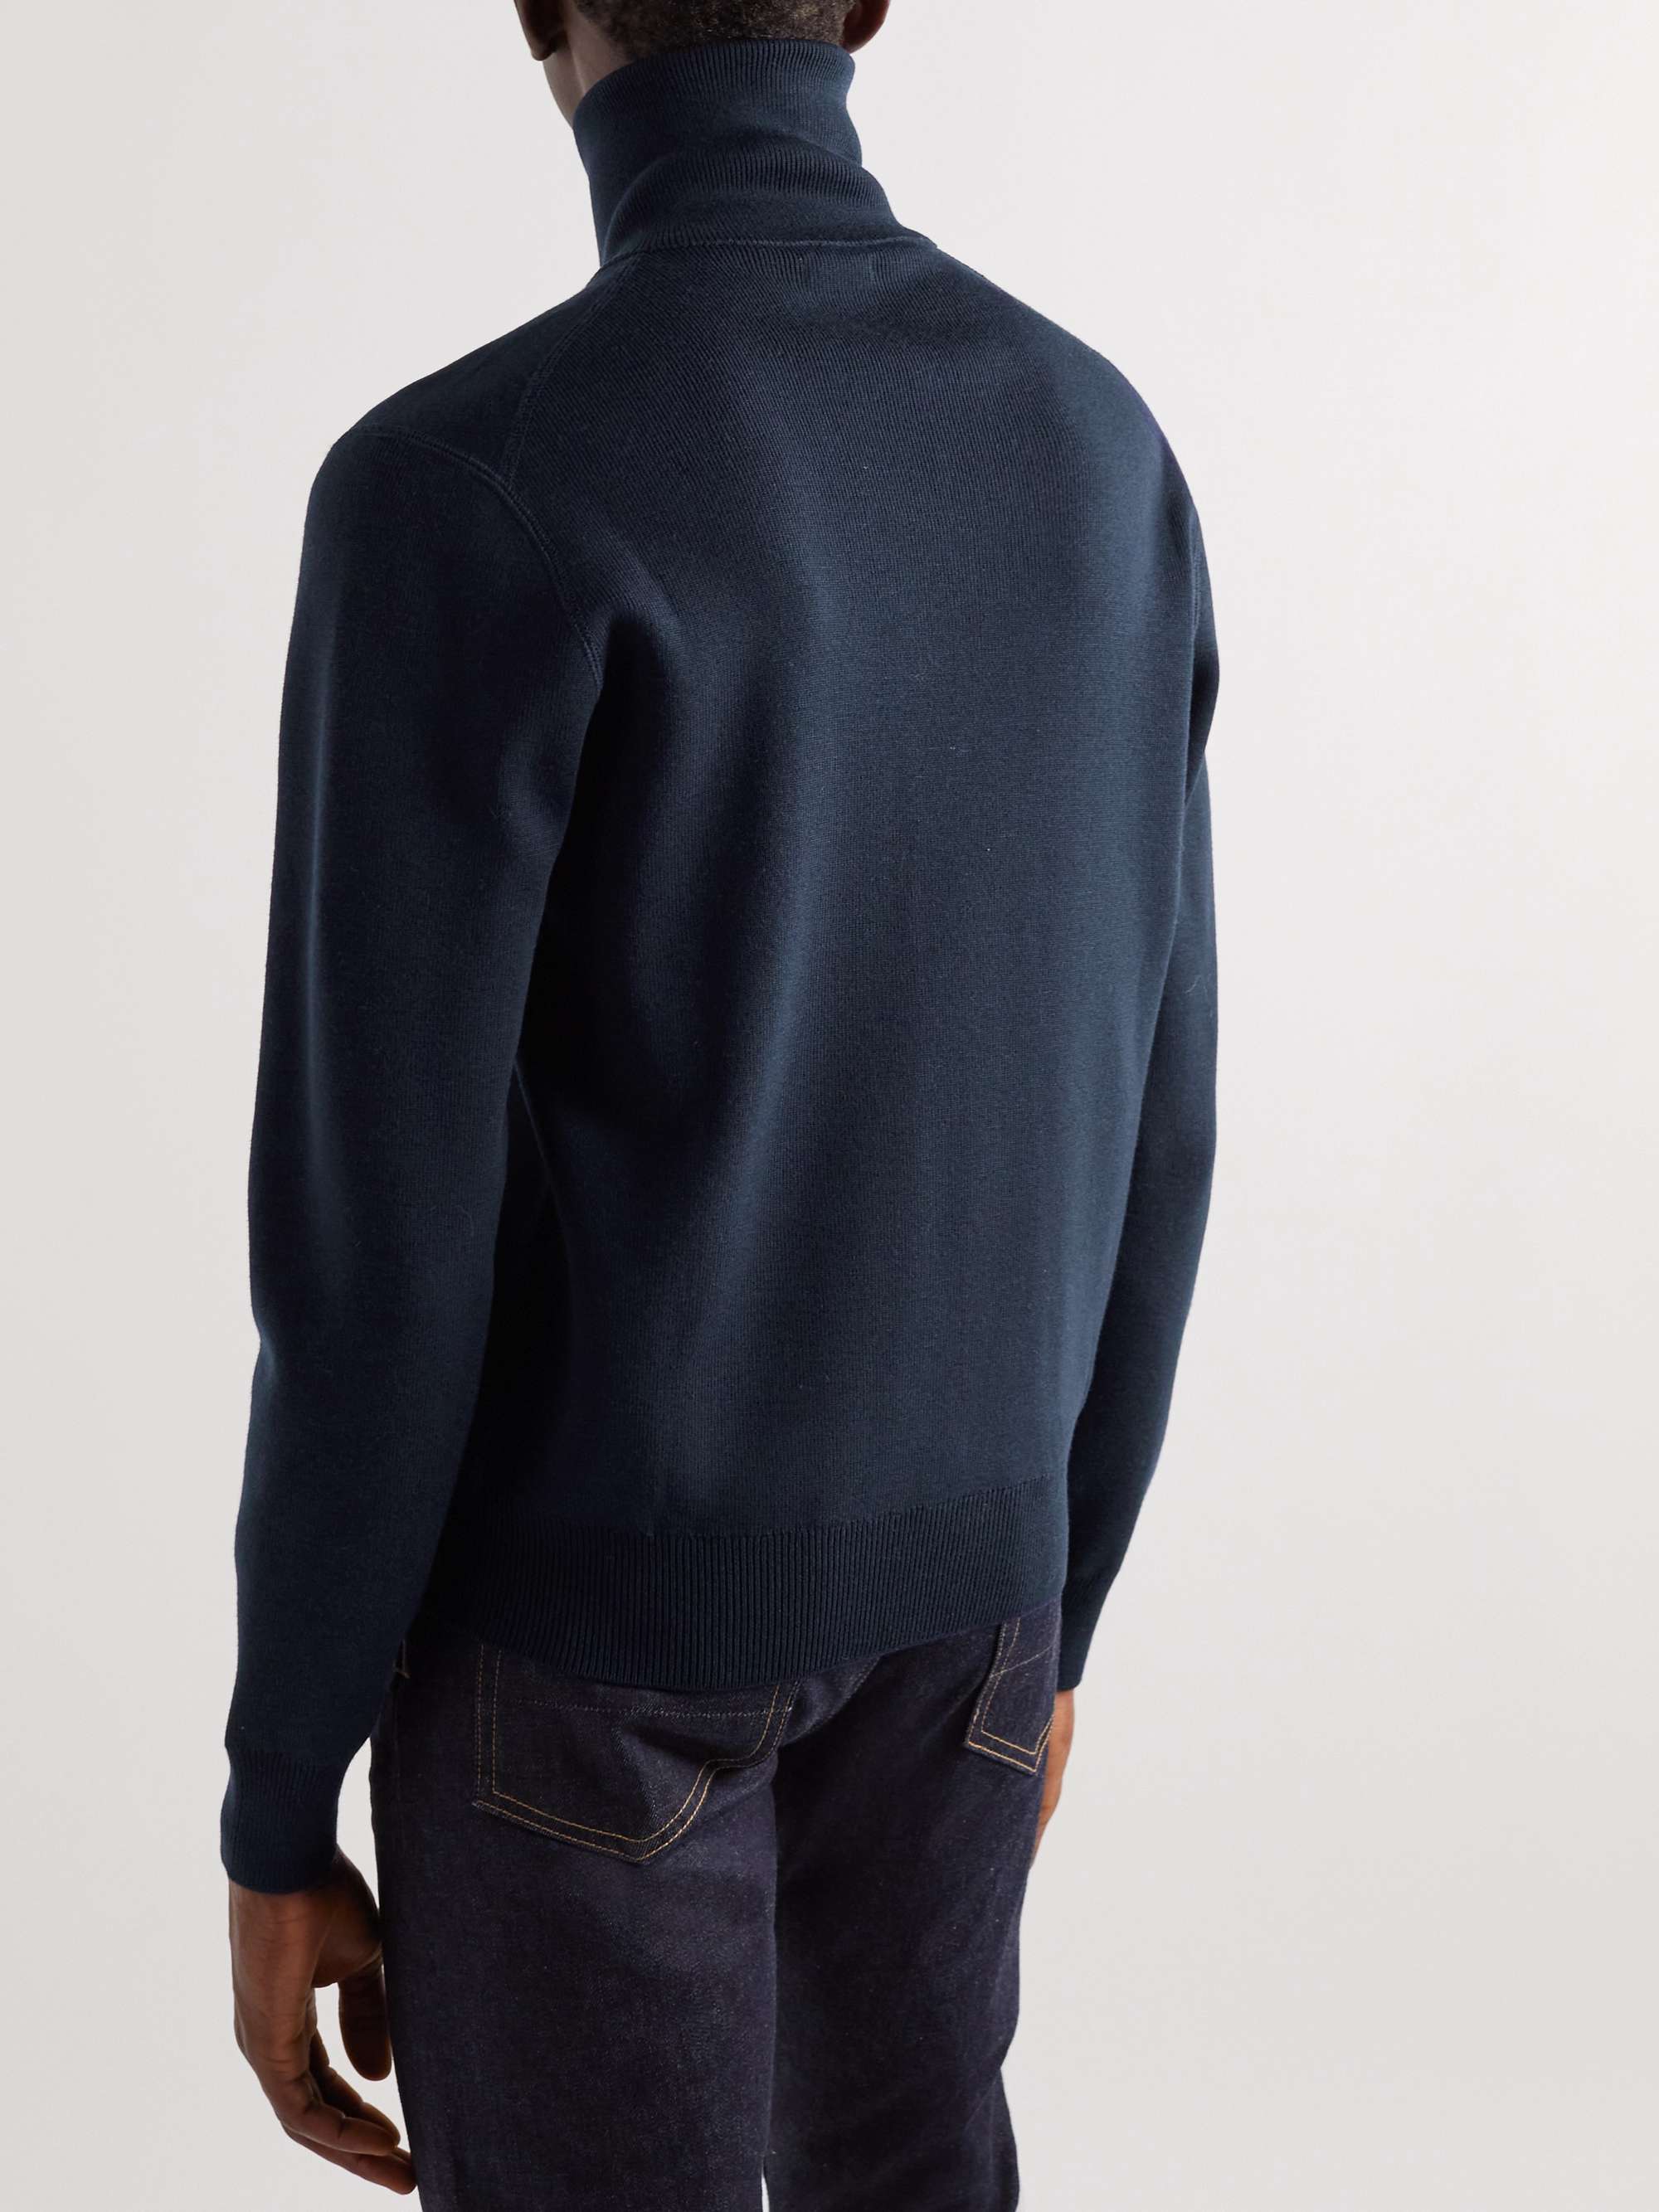 TOM FORD Merino Wool Half-Zip Sweater